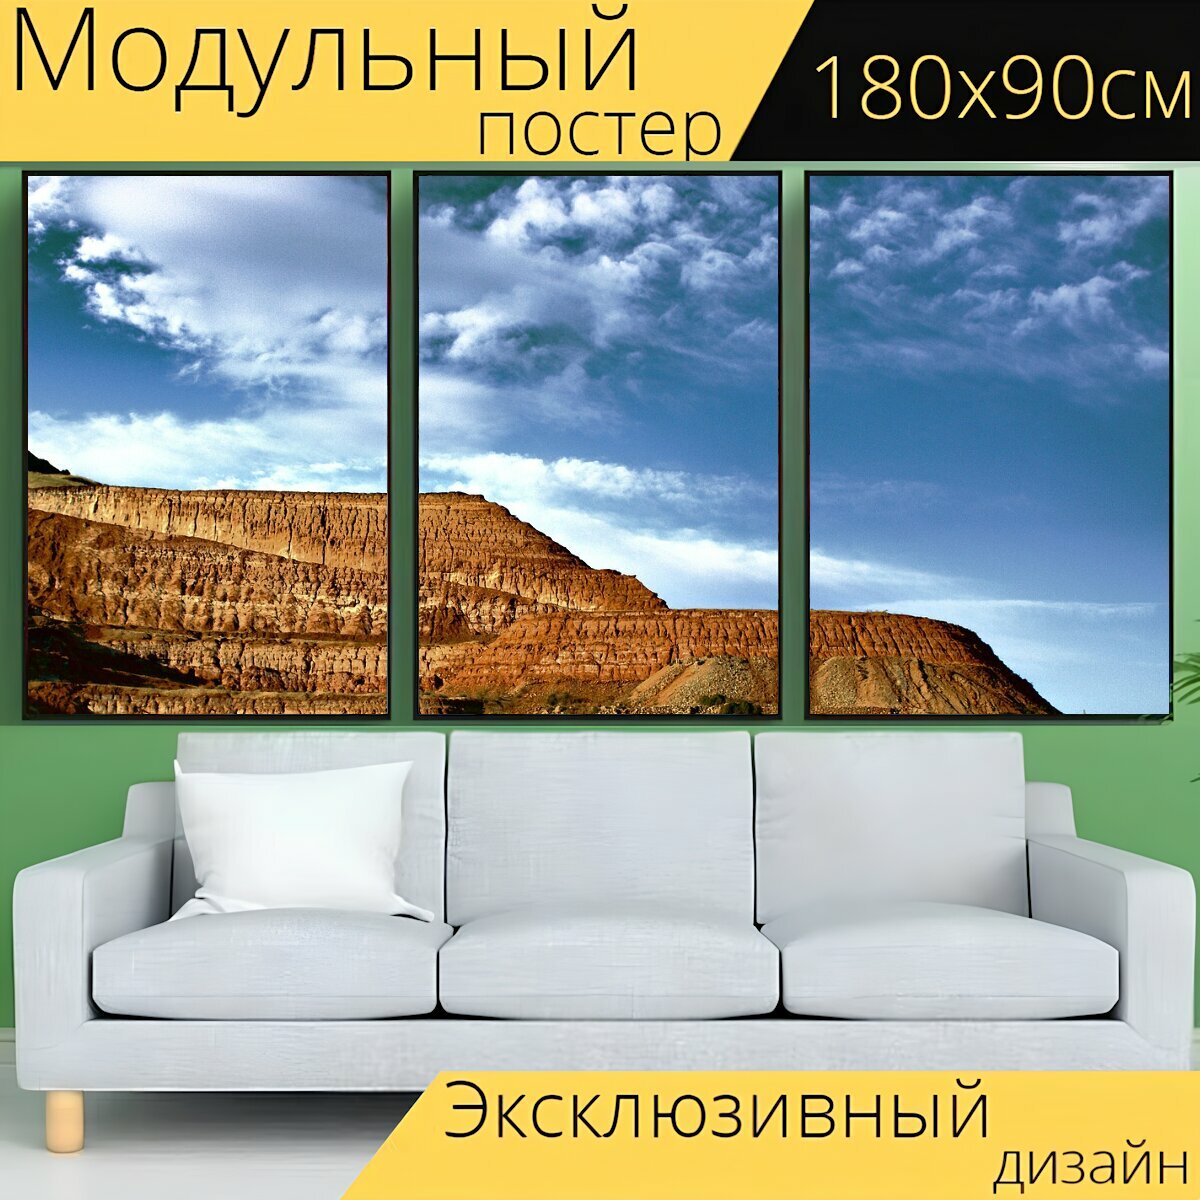 Модульный постер "Железо, гора, хилл" 180 x 90 см. для интерьера